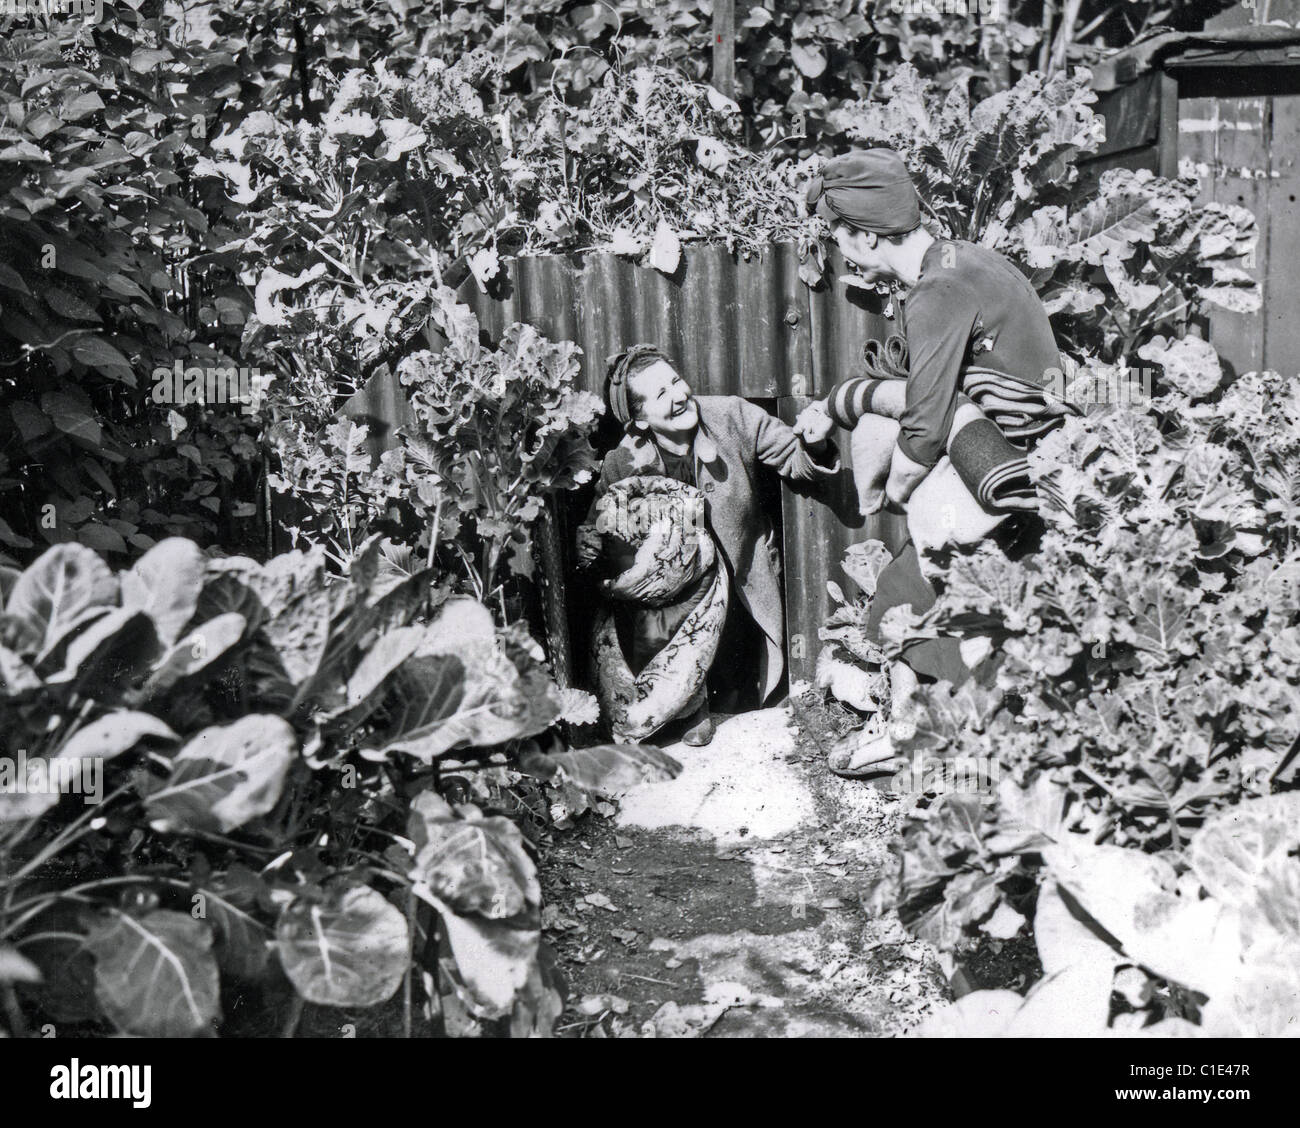 ANDERSON Schutz in einem Garten von London im Jahre 1941. Beachten Sie die Erde für die Verwendung als ein Gemüsebeet Stockfoto